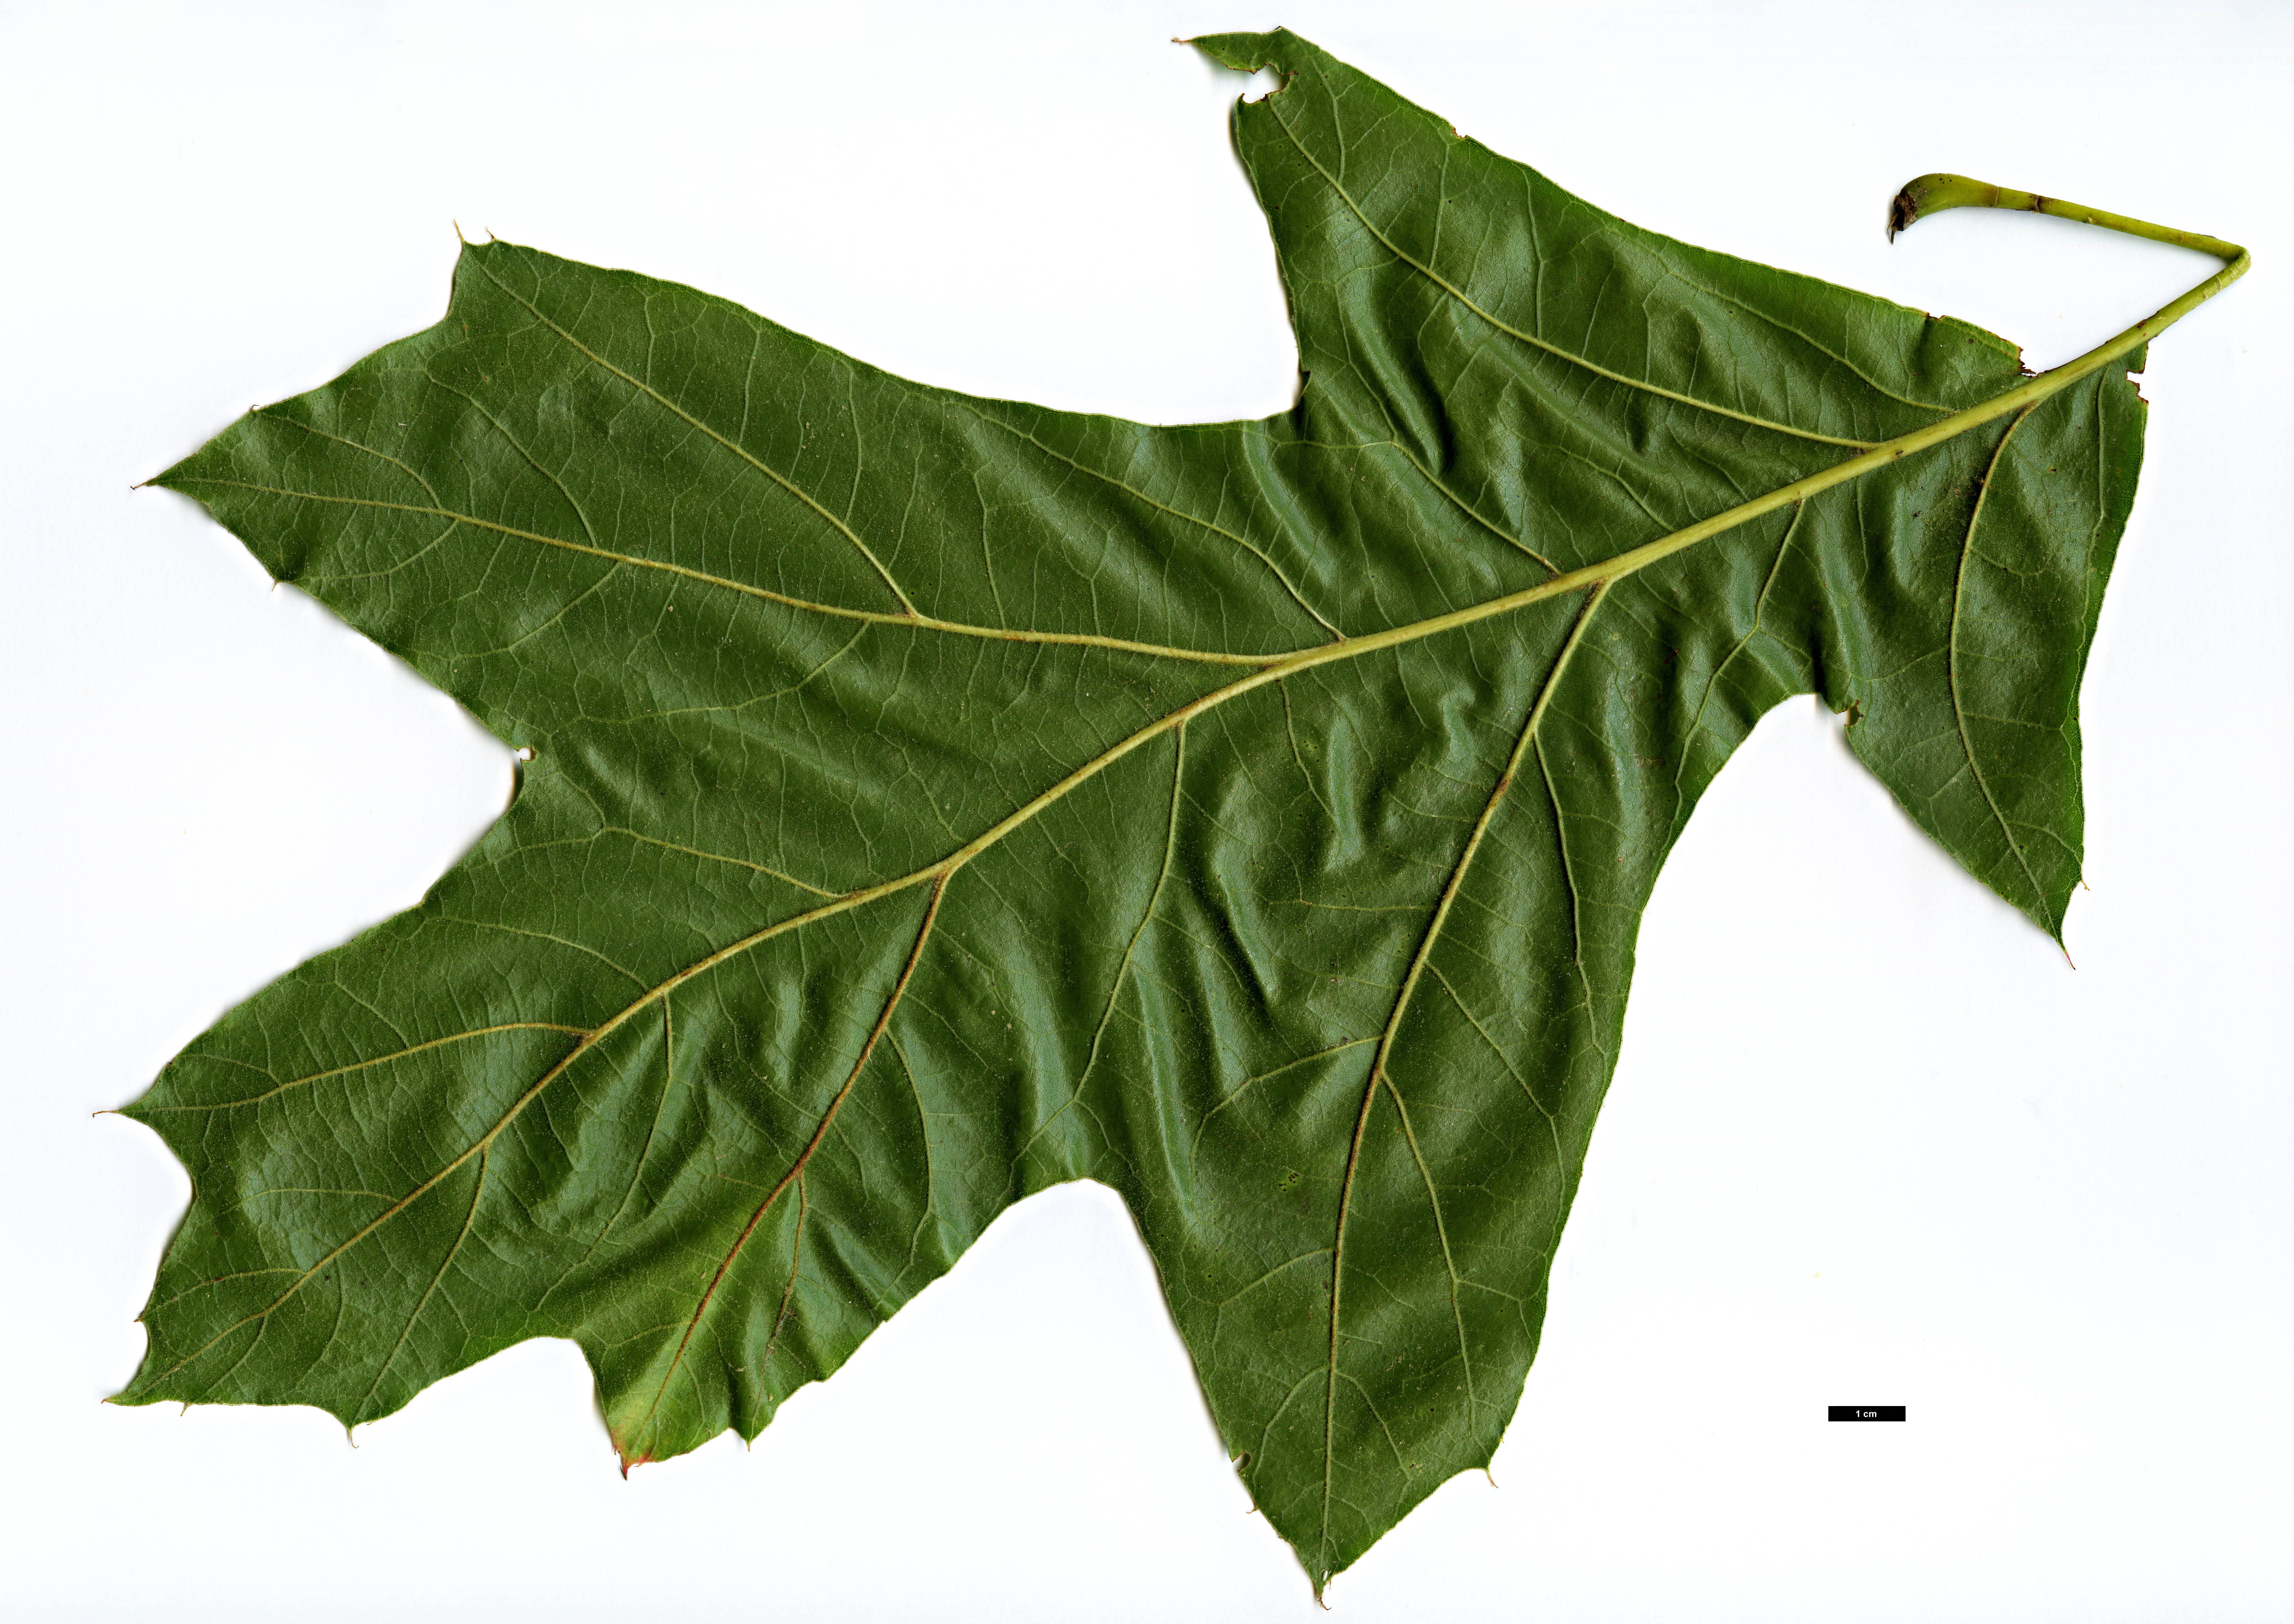 High resolution image: Family: Fagaceae - Genus: Quercus - Taxon: velutina - SpeciesSub: 'Rubrifolia'